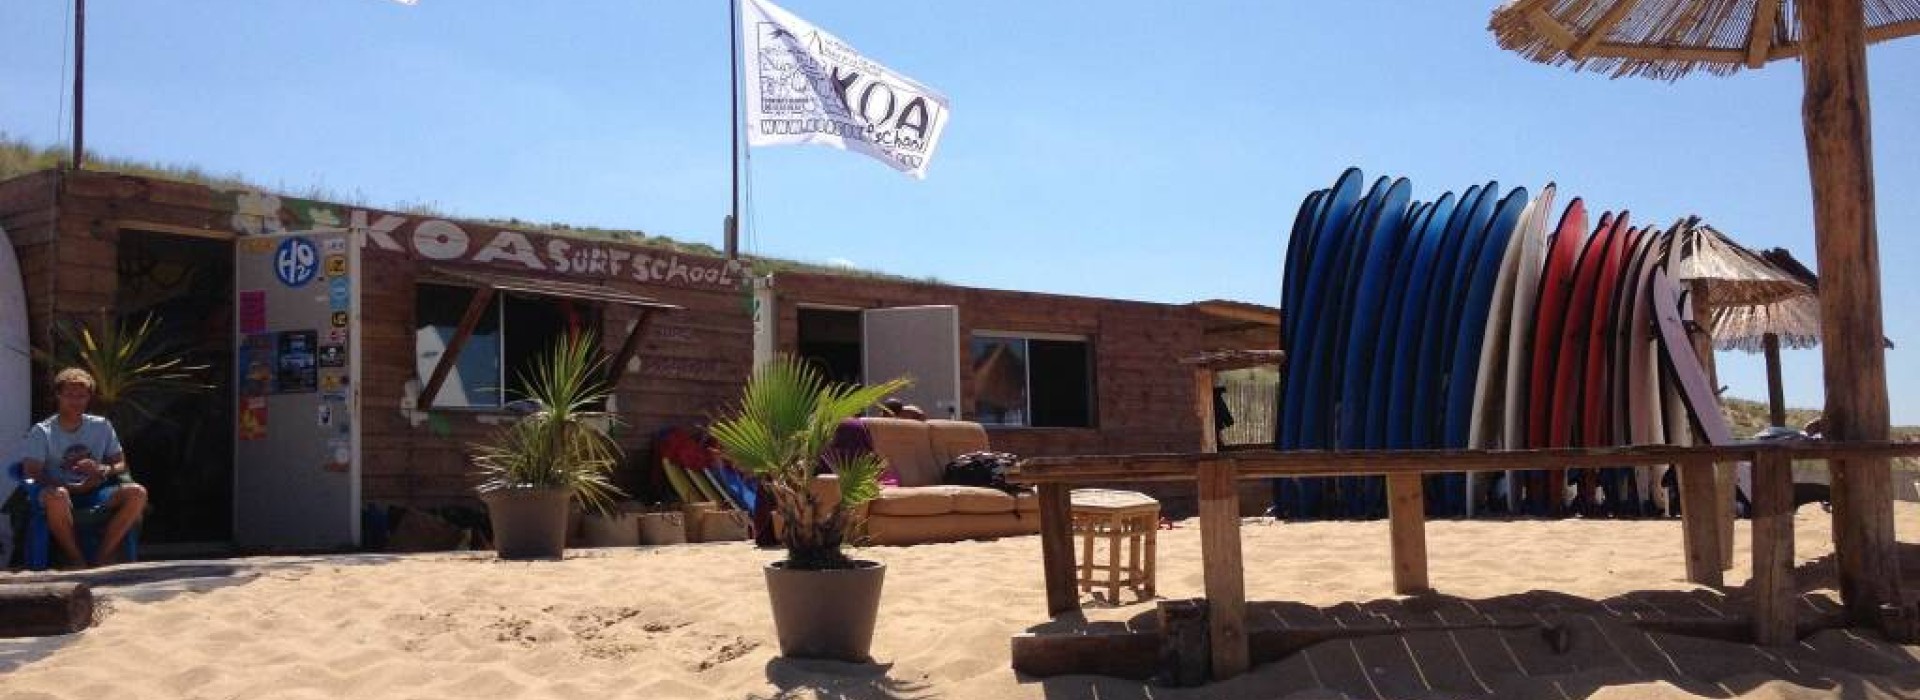 KOA SURF SCHOOL